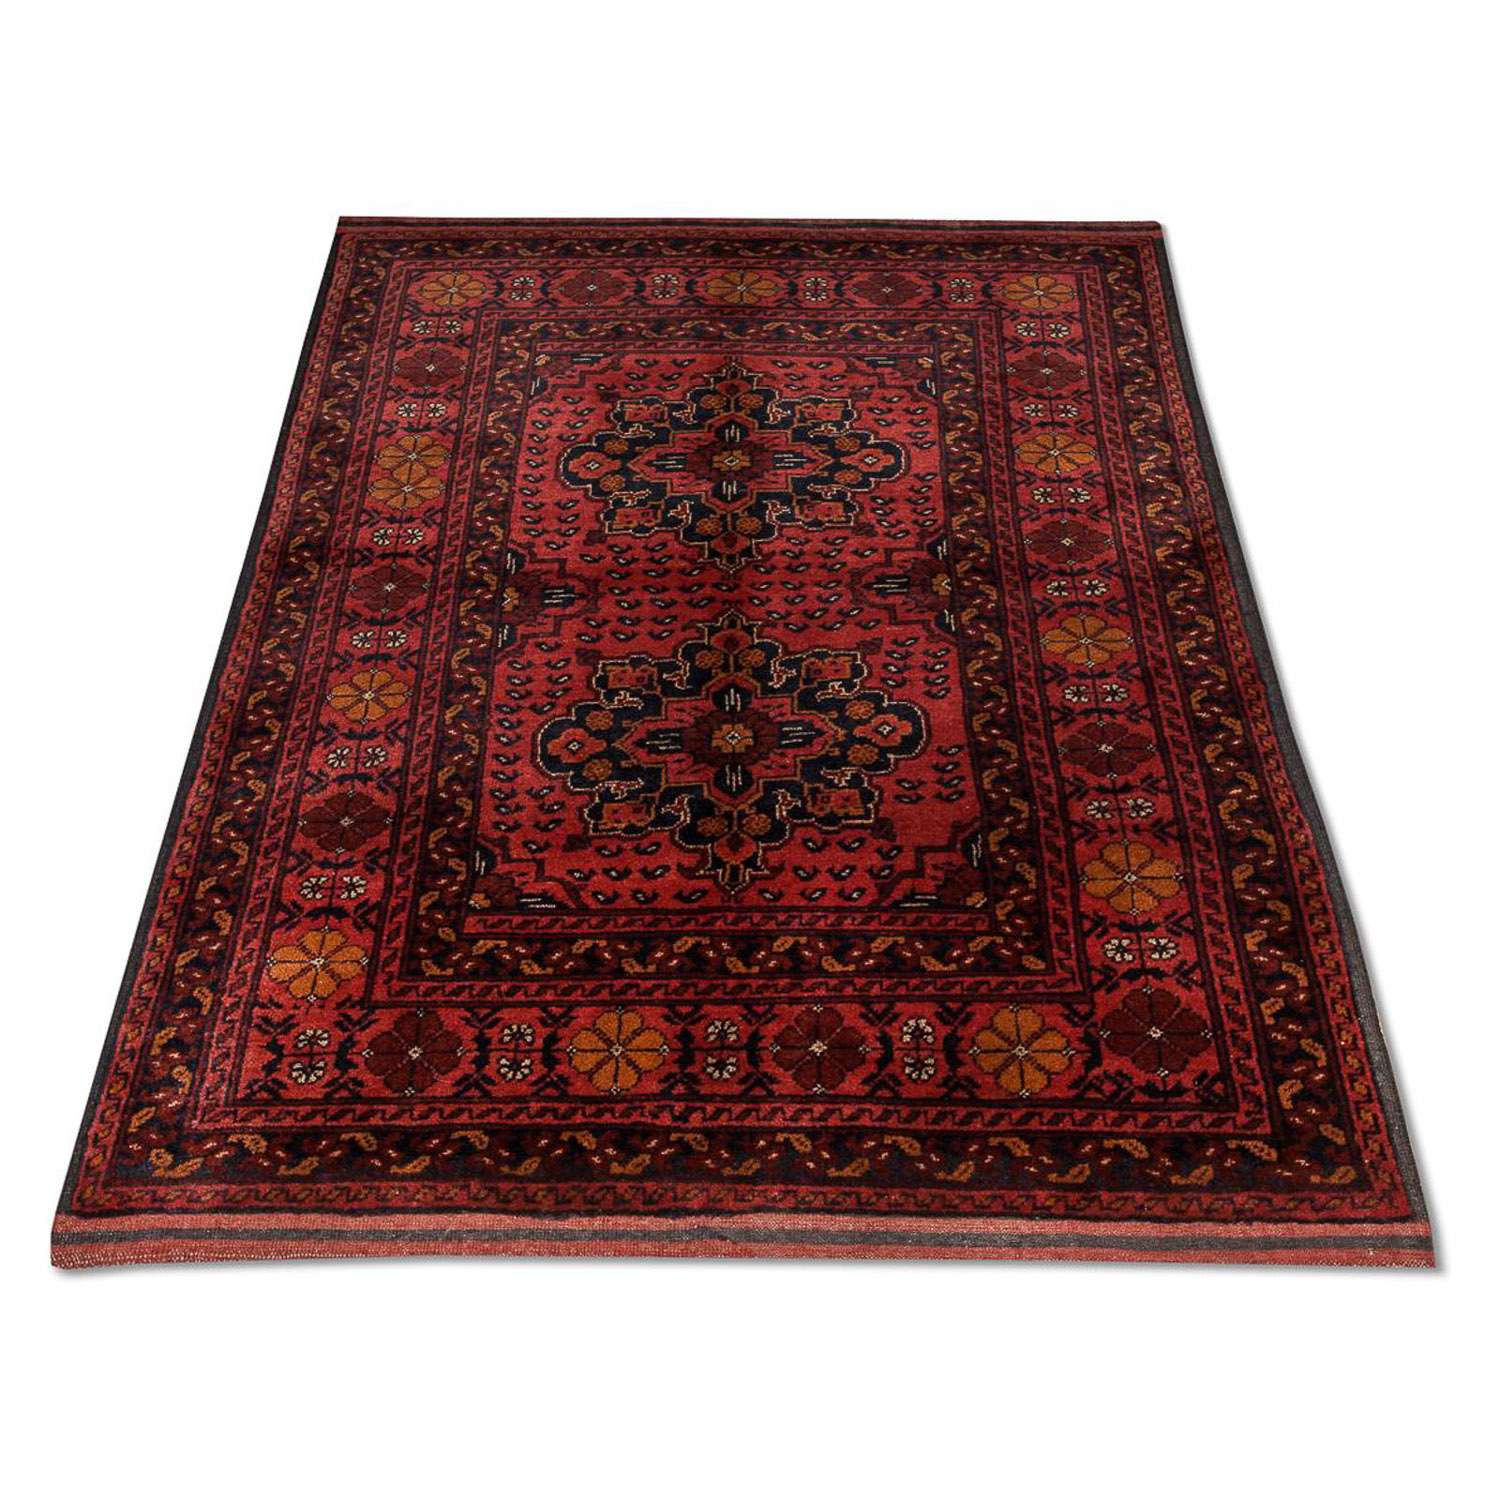 Afghaans tapijt - Kunduz - 138 x 96 cm - rood